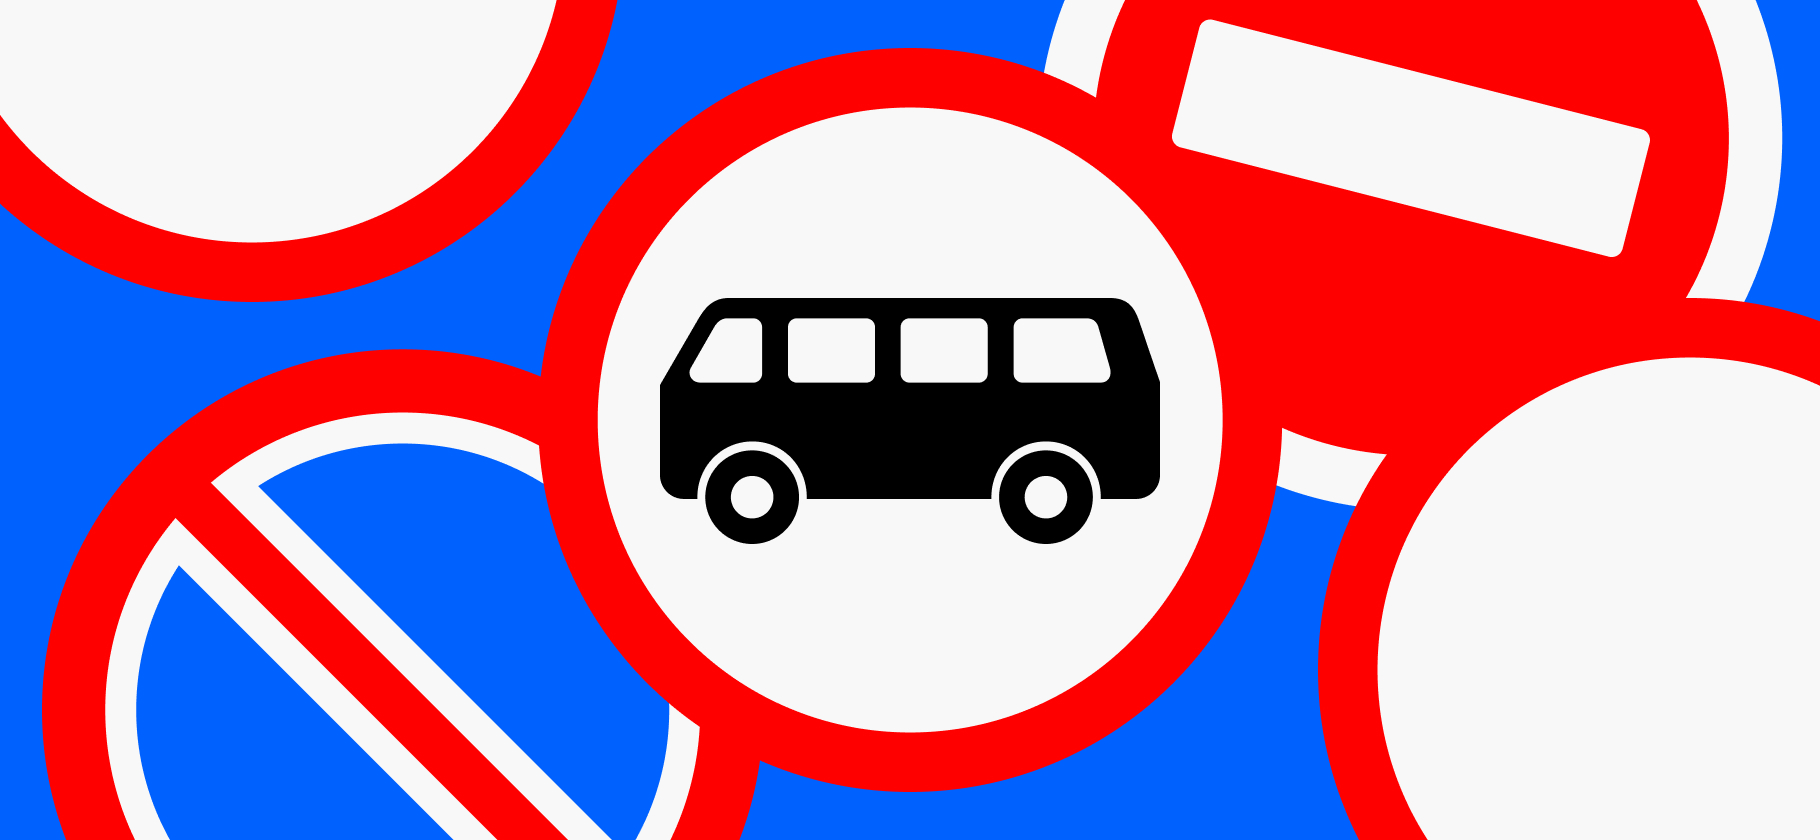 «Остановите на остановке»: 7 проблем общественного транспорта в российских городах